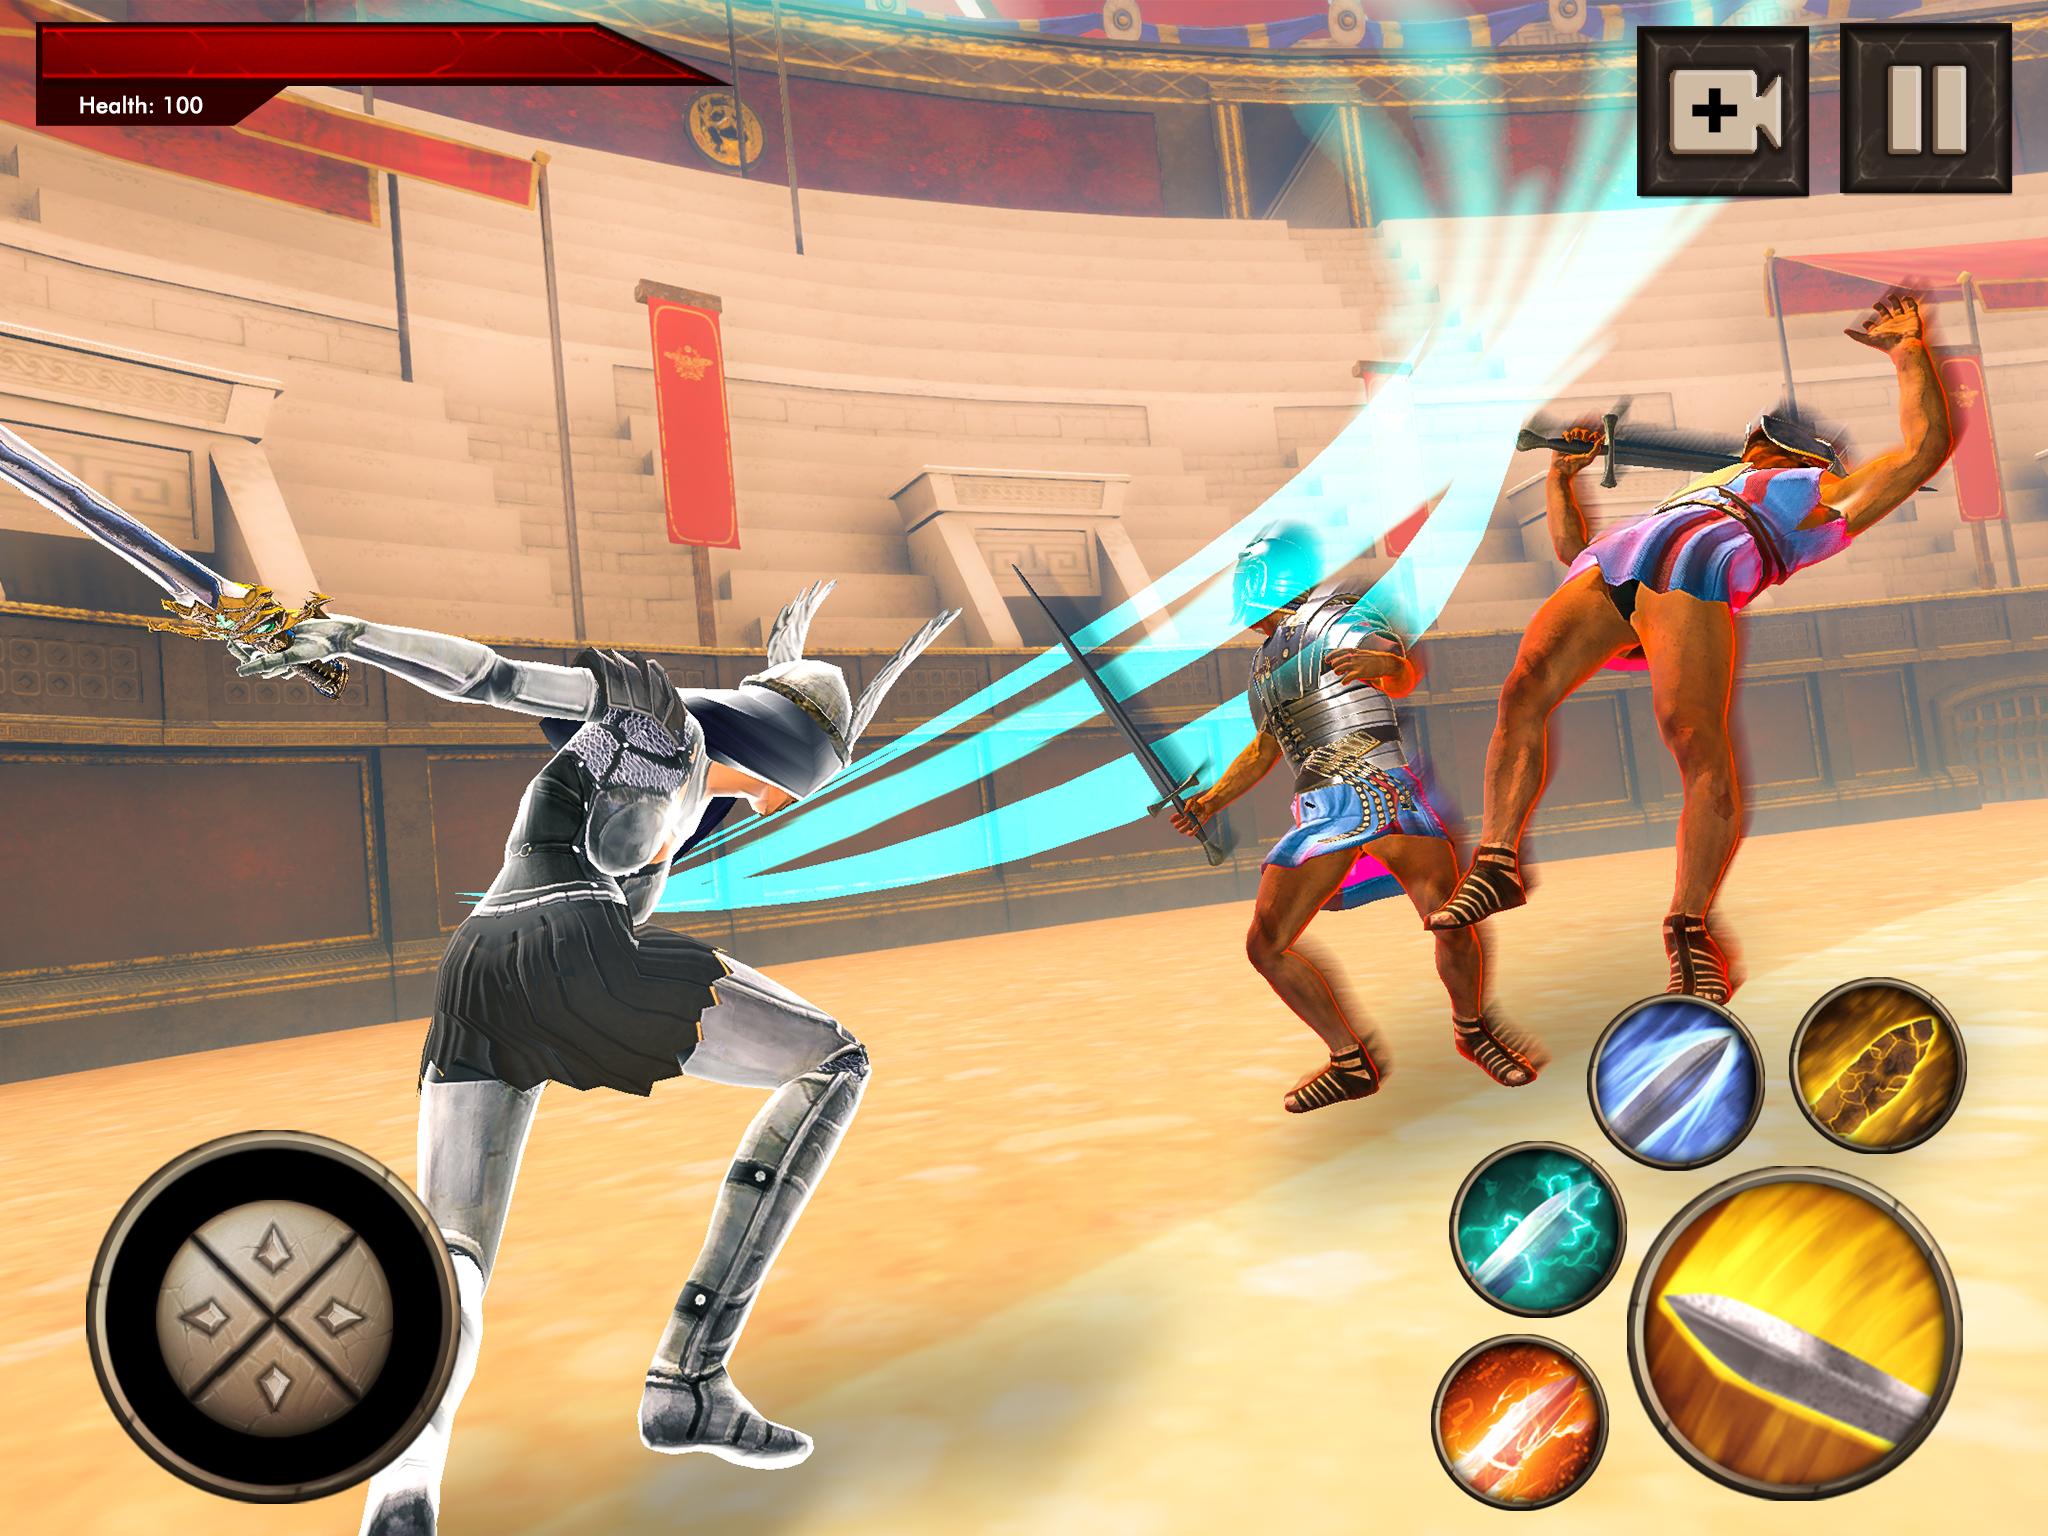 Samurai Ninja Warrior Sword Fighting Games 2020 For Android Apk Download - ninja warrior of roblox 11